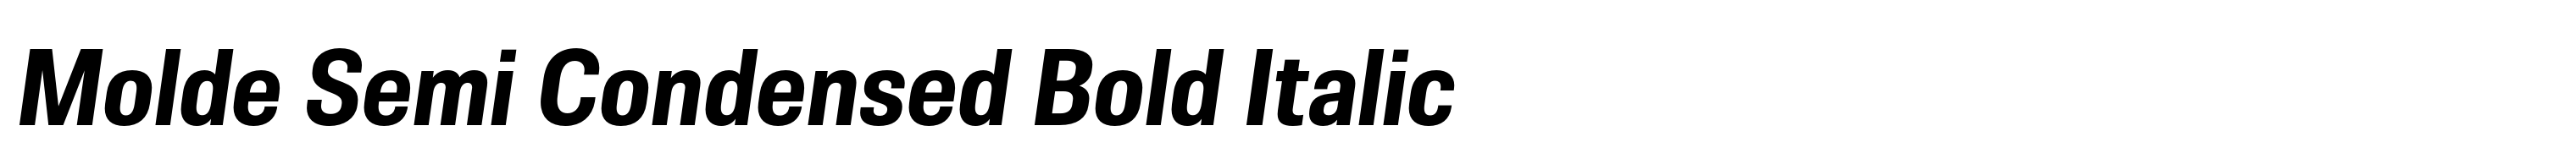 Molde Semi Condensed Bold Italic